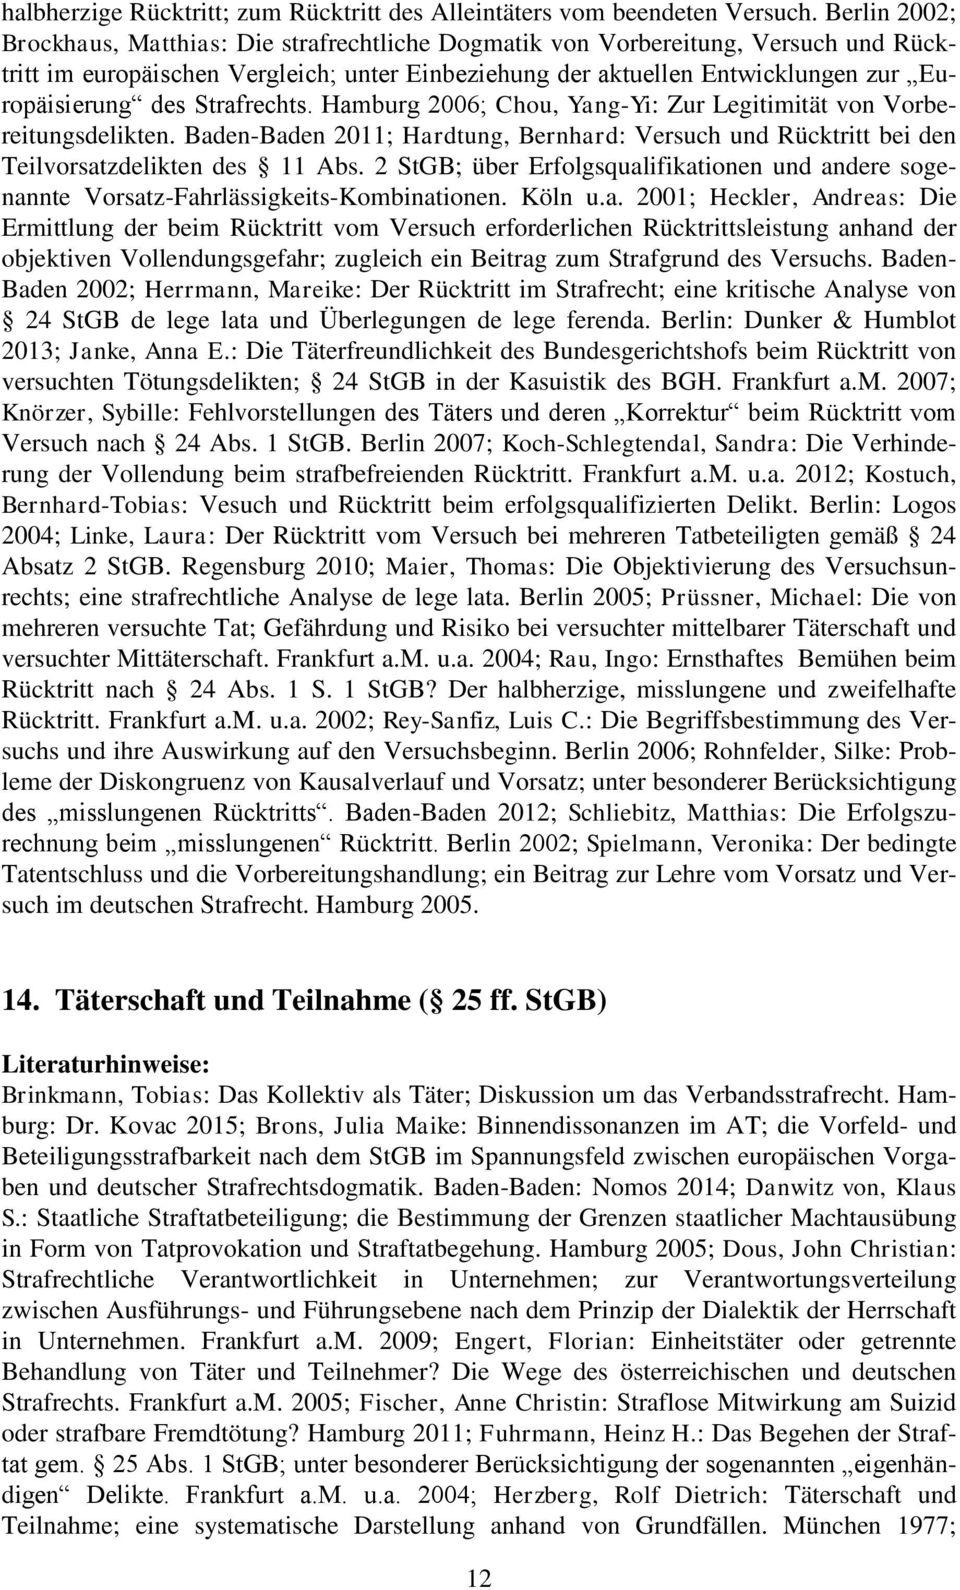 Strafrechts. Hamburg 2006; Chou, Yang-Yi: Zur Legitimität von Vorbereitungsdelikten. Baden-Baden 2011; Hardtung, Bernhard: Versuch und Rücktritt bei den Teilvorsatzdelikten des 11 Abs.